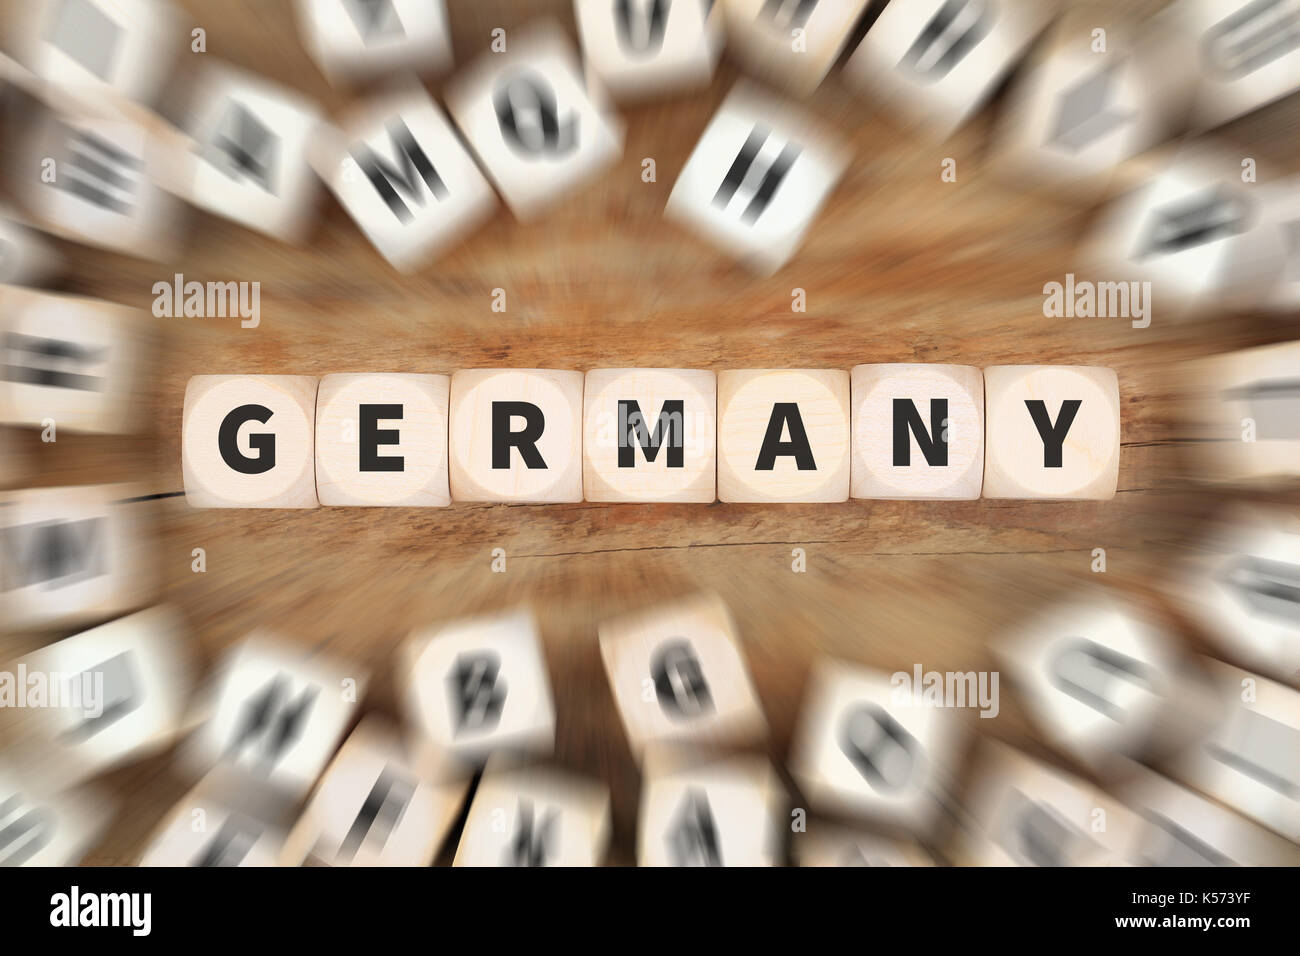 Deutschland Land reisen Reisen Würfel Business Konzept Idee Stockfoto